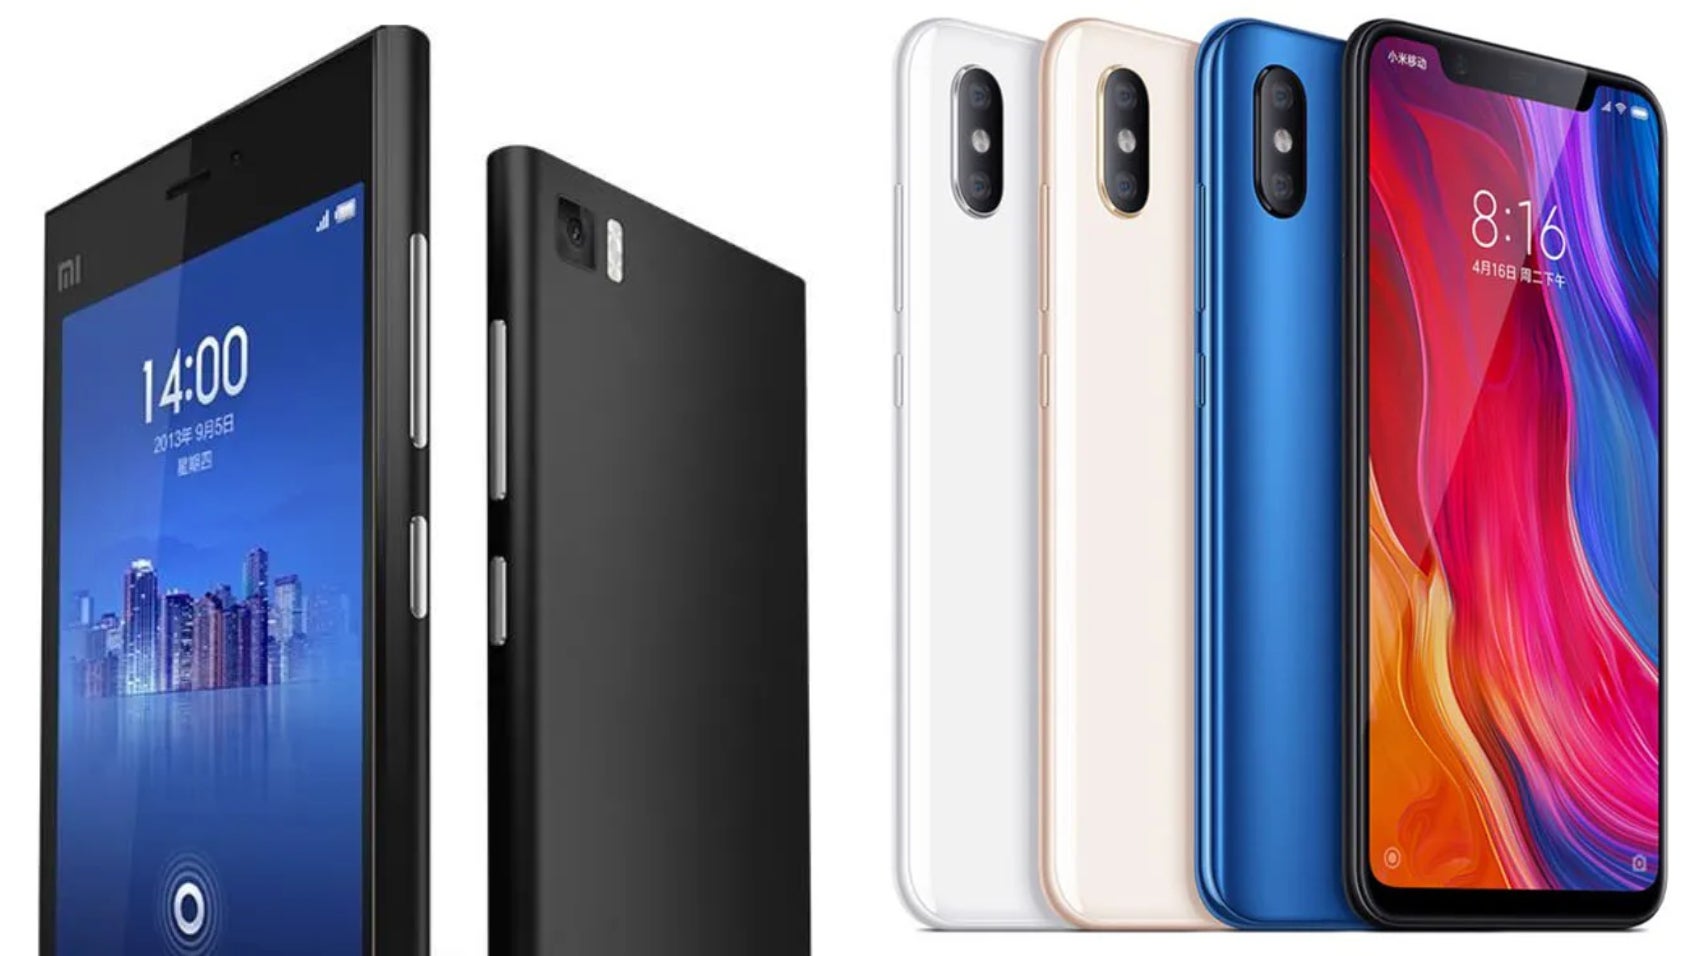 Xiaomi Mi3 (links) en Xiaomi Mi8 (rechts) - doet de laatste je denken aan een telefoon van $ 1.000?  - Xiaomi 12S Ultra: van een iPhone-kloon tot een wereldwijde krachtpatser - de student wordt de meester?